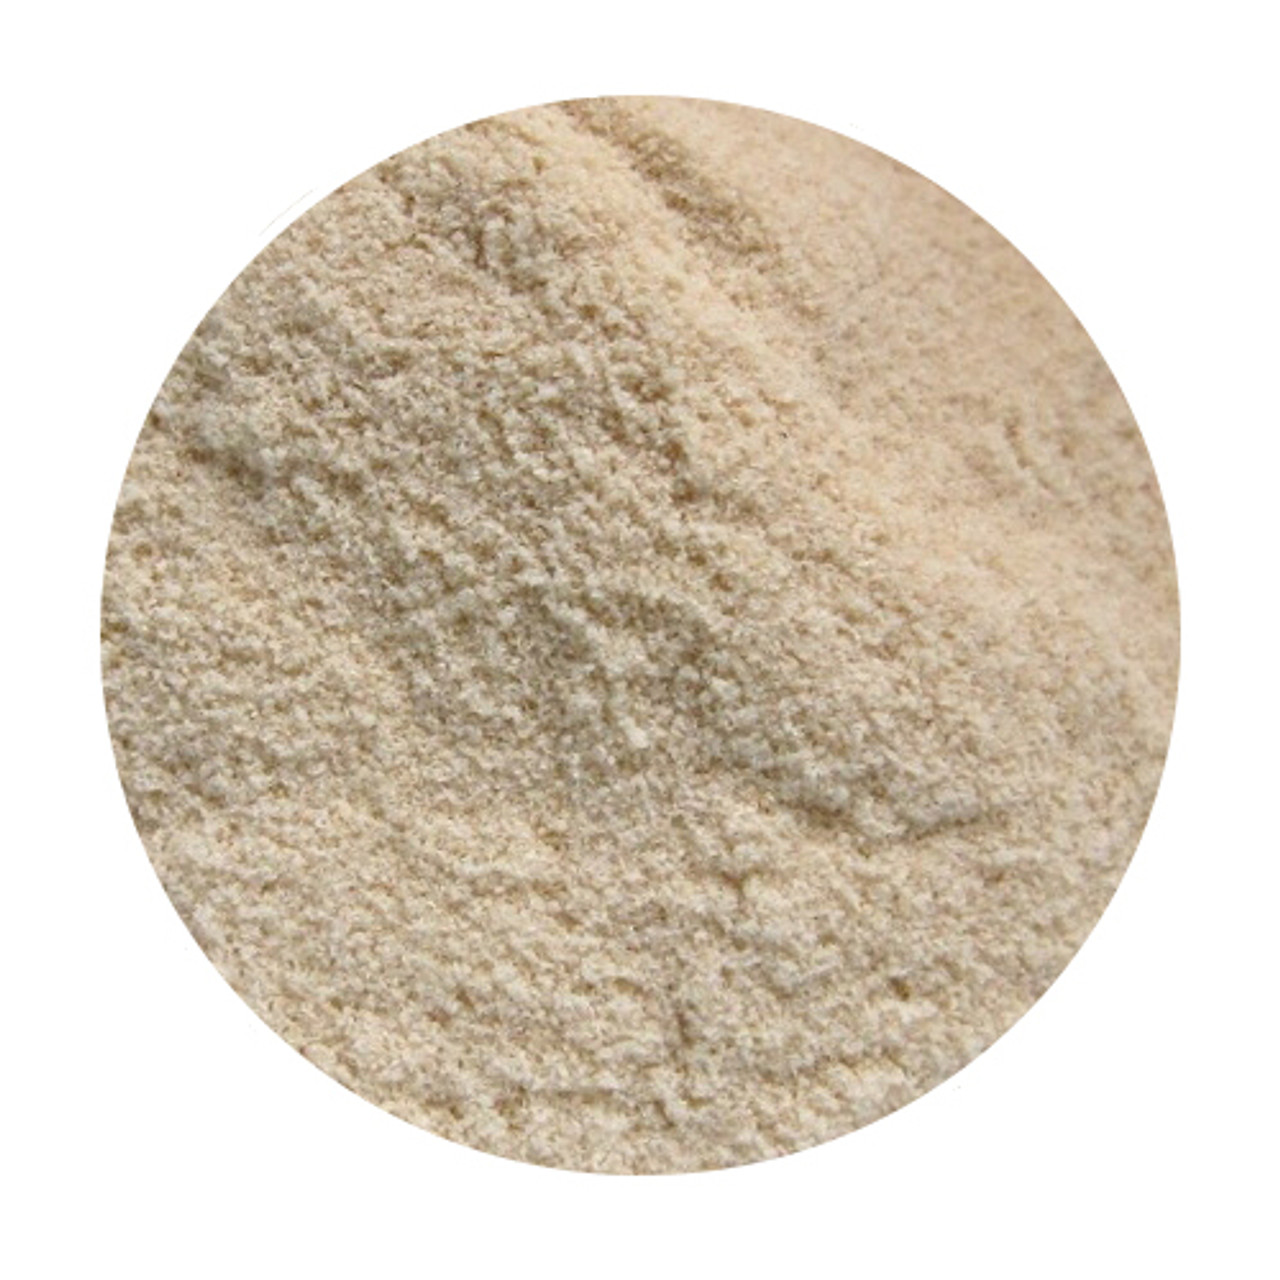 Sodium Alginate Powder Suppliers 19161690 - Wholesale